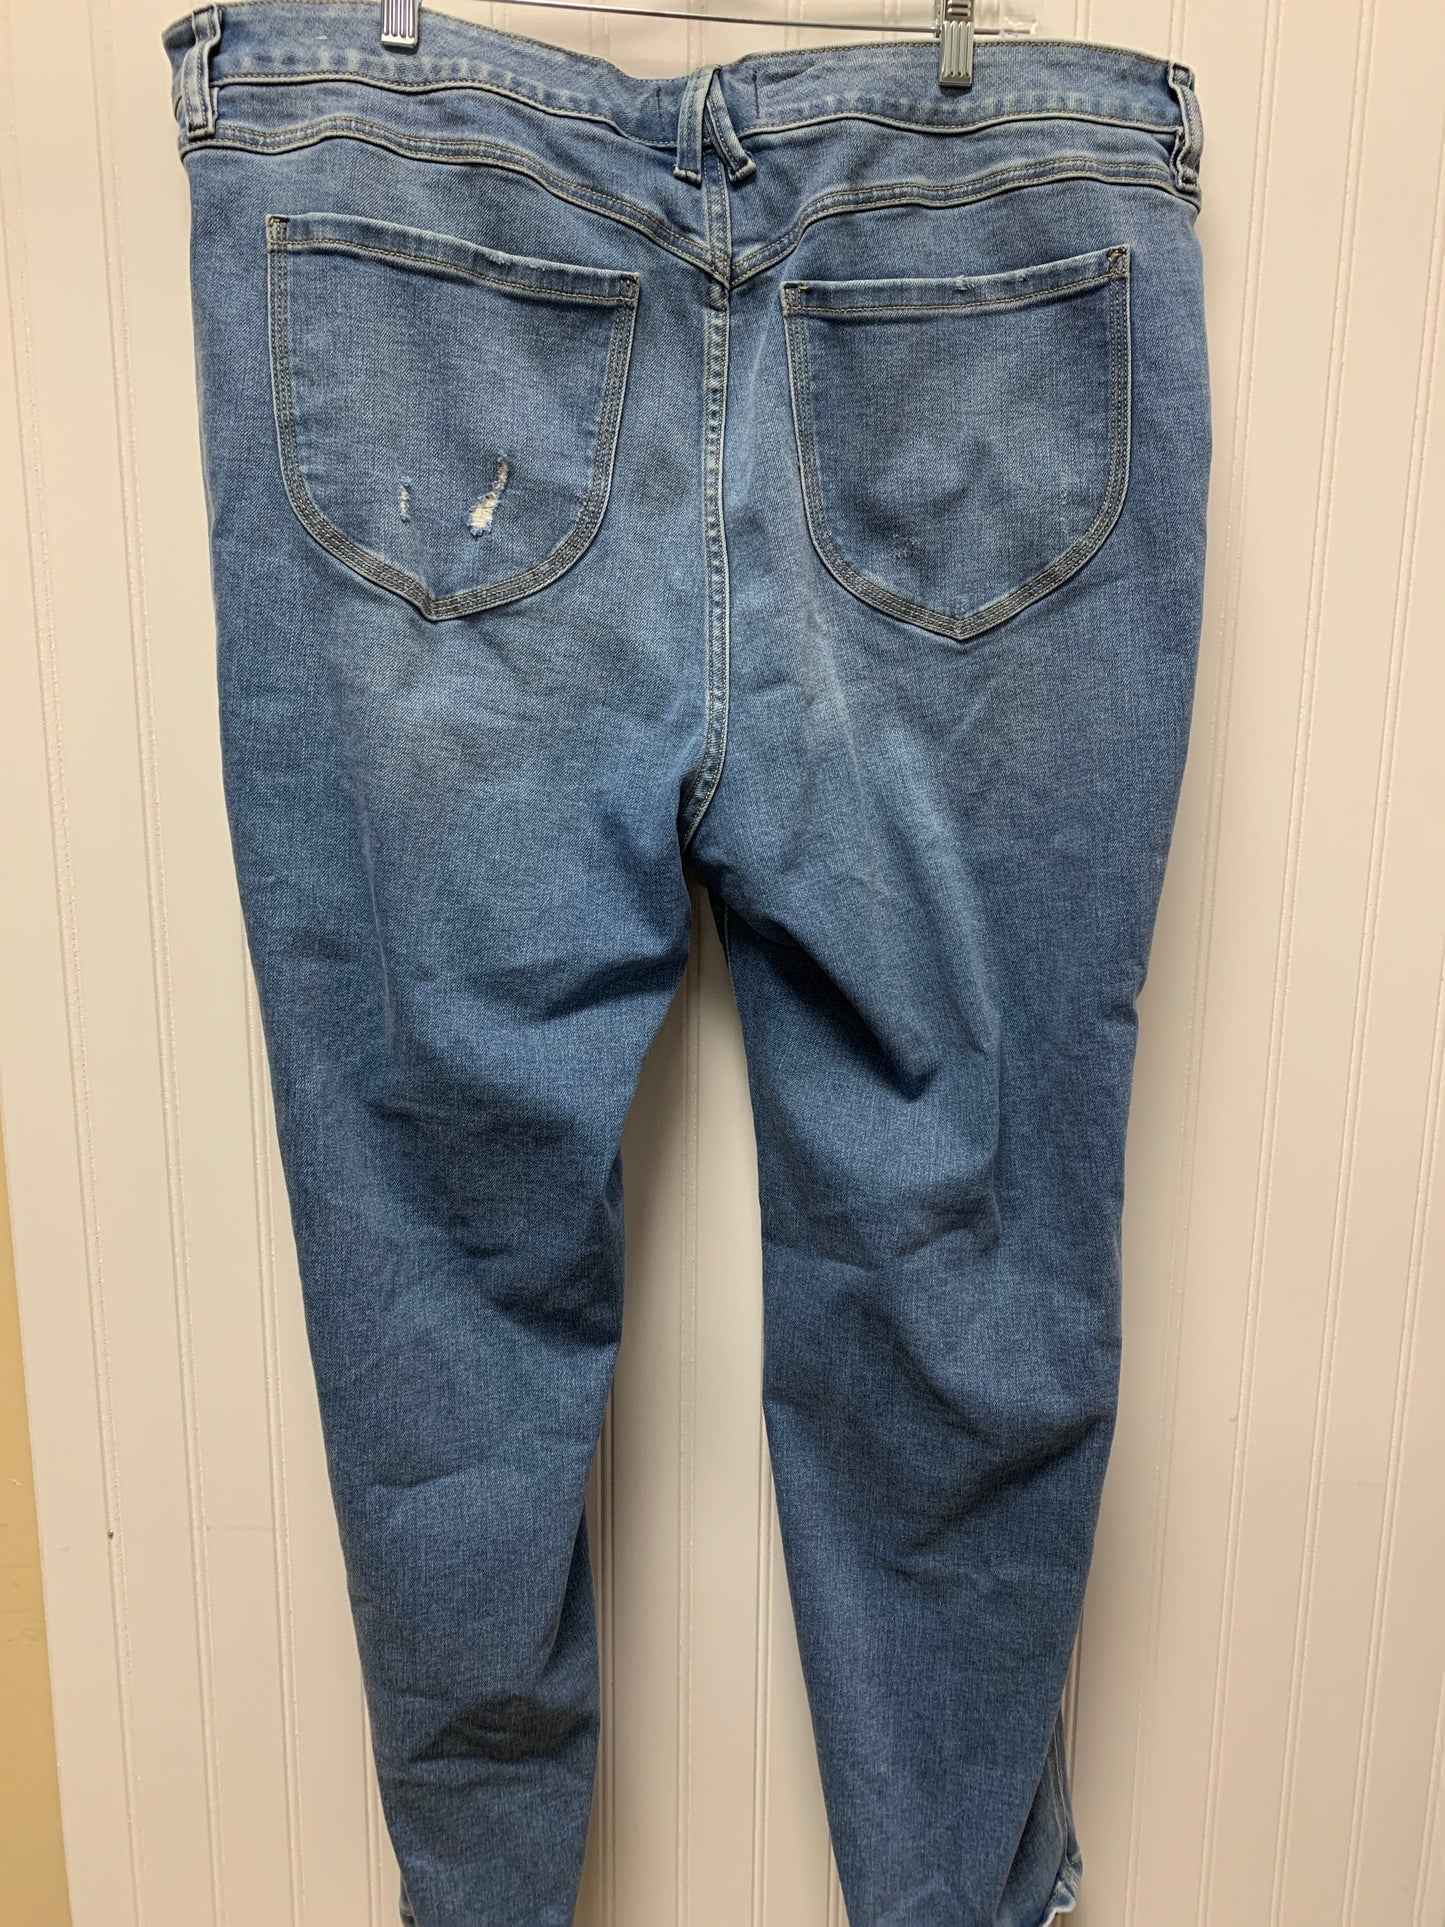 Jeans Boyfriend By Lane Bryant  Size: 24